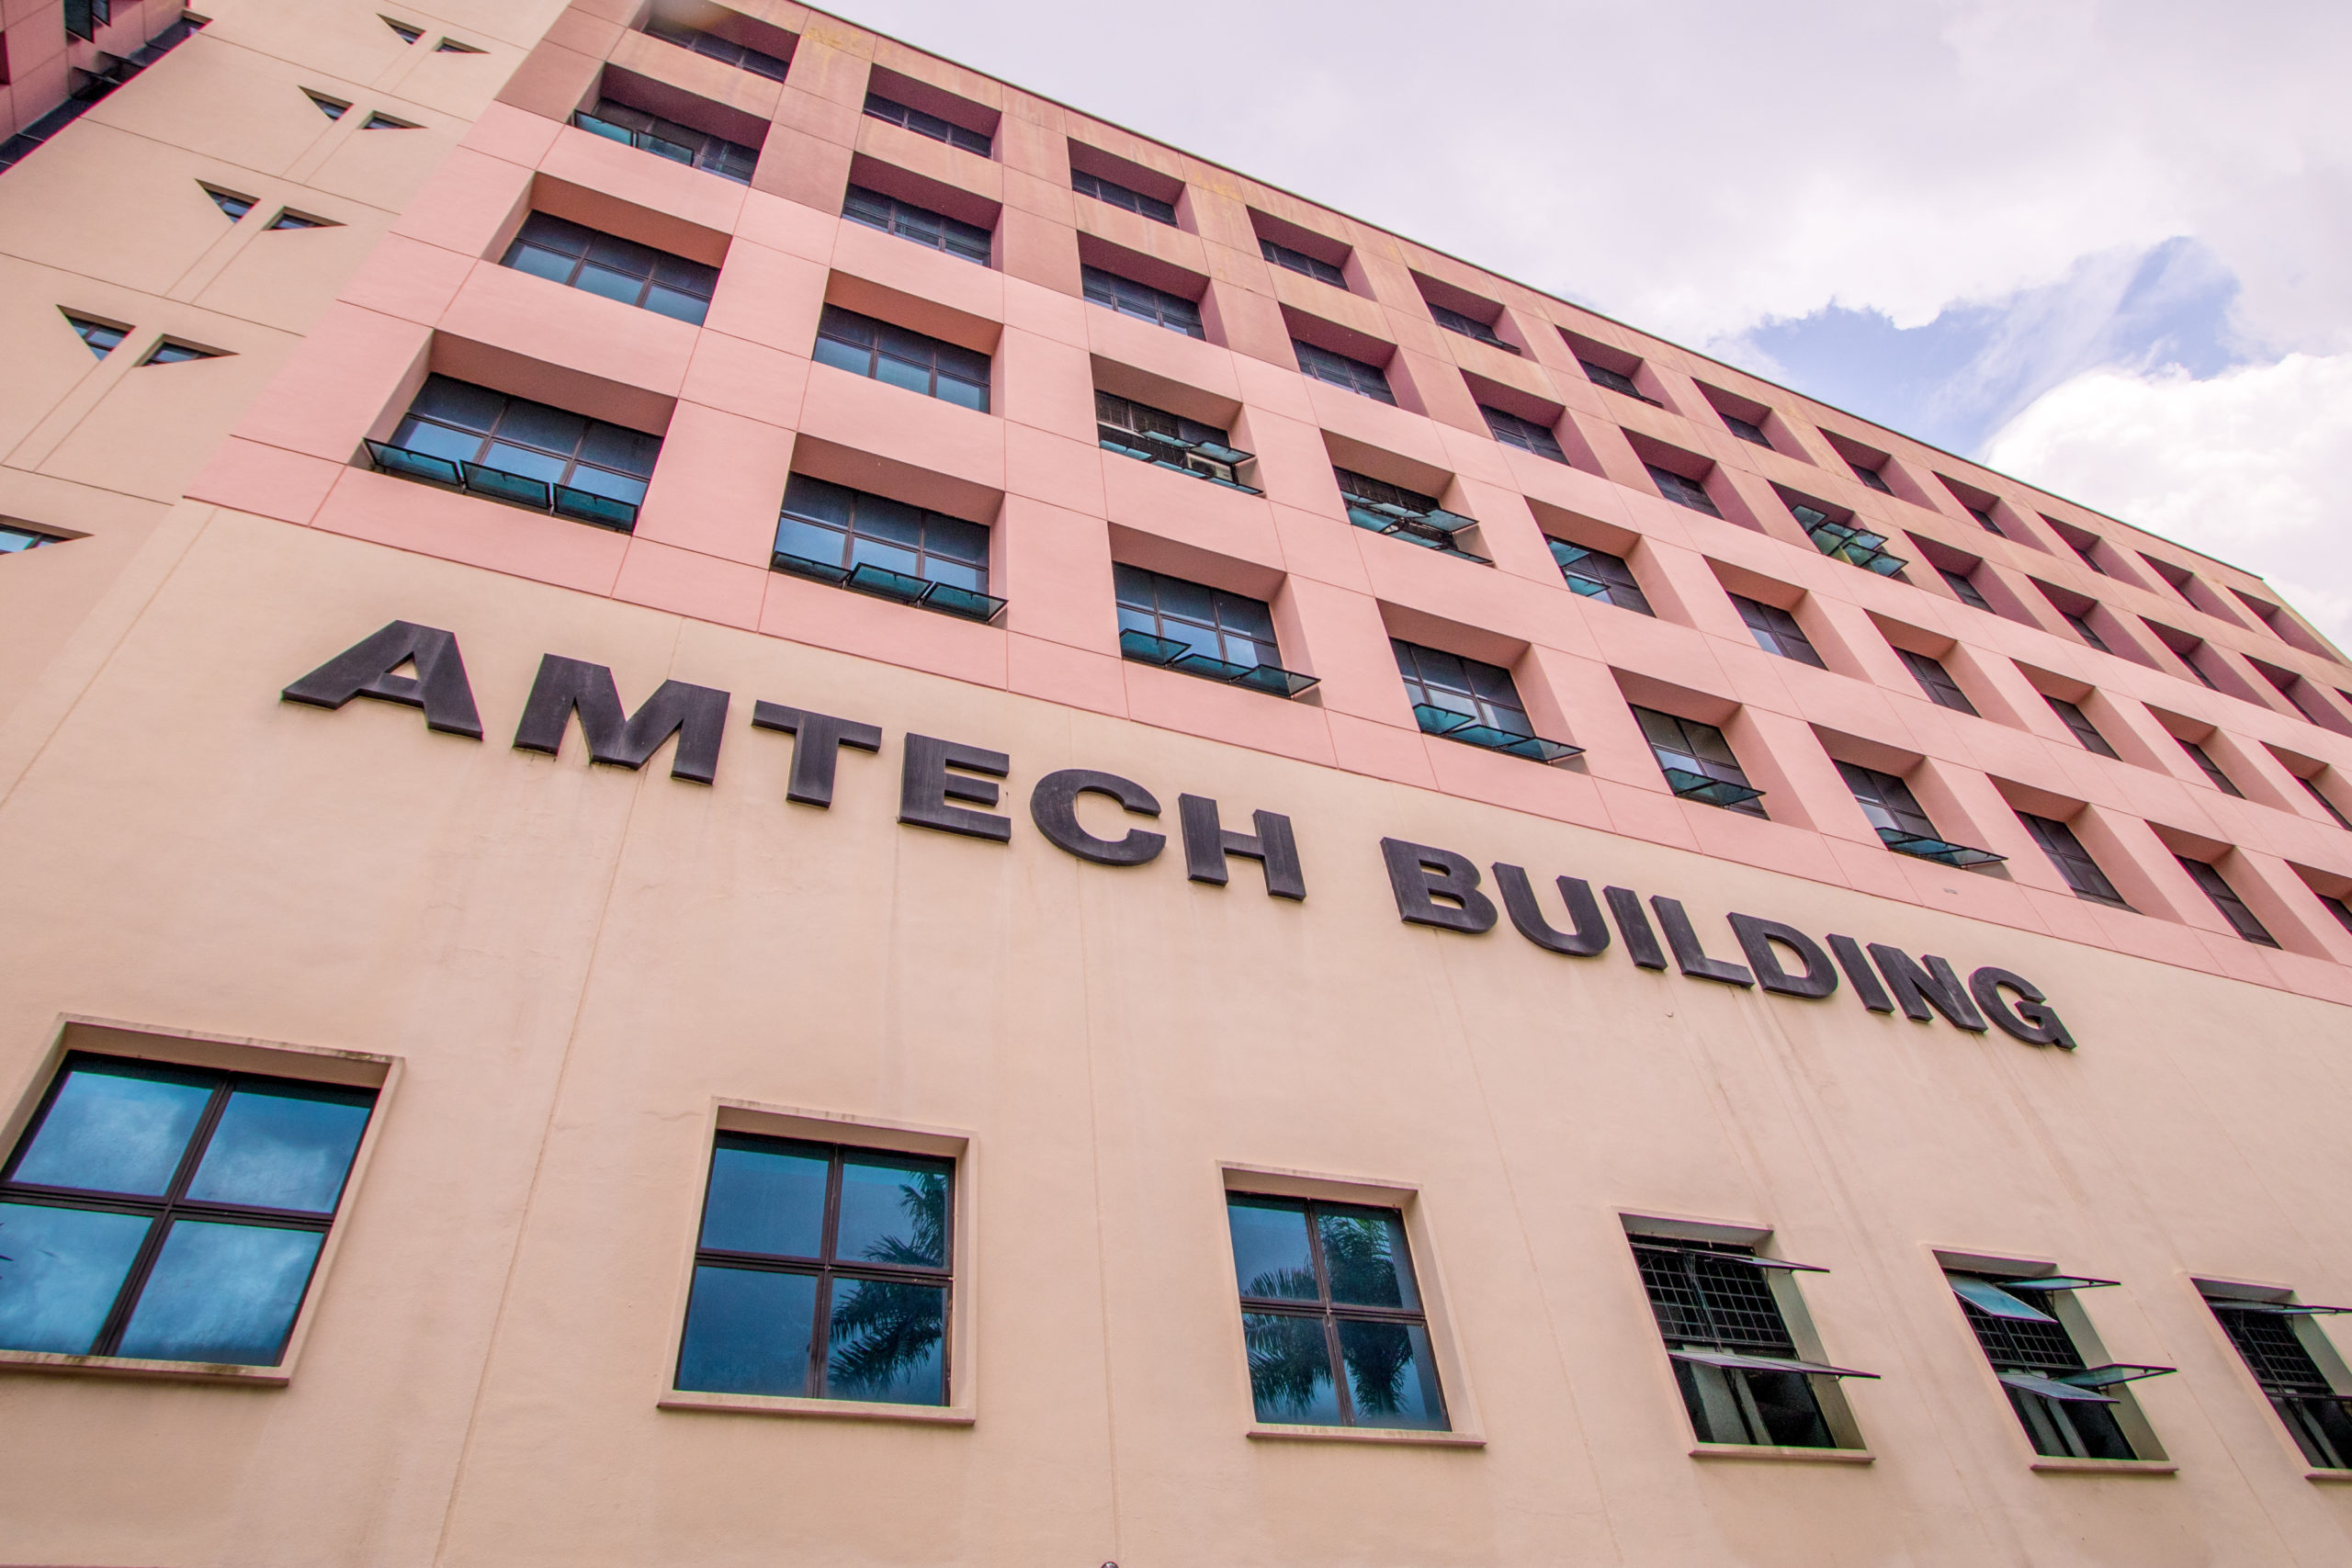 Amtech Building